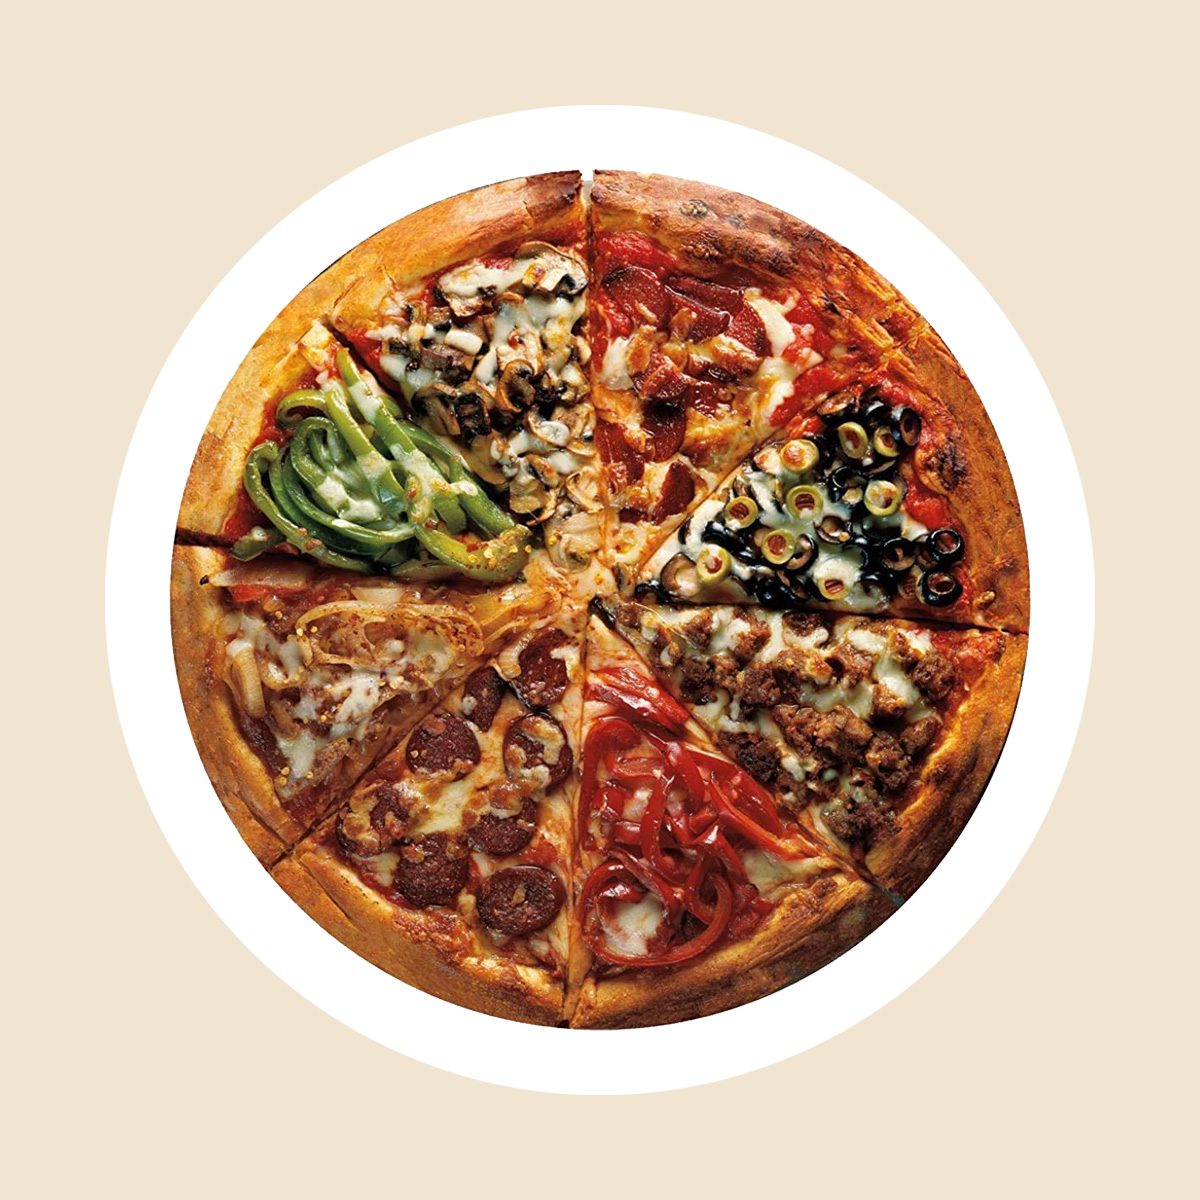 https://www.tasteofhome.com/wp-content/uploads/2020/08/pizza-puzzle-via-amazon.com-ecomm.jpg?fit=700%2C700